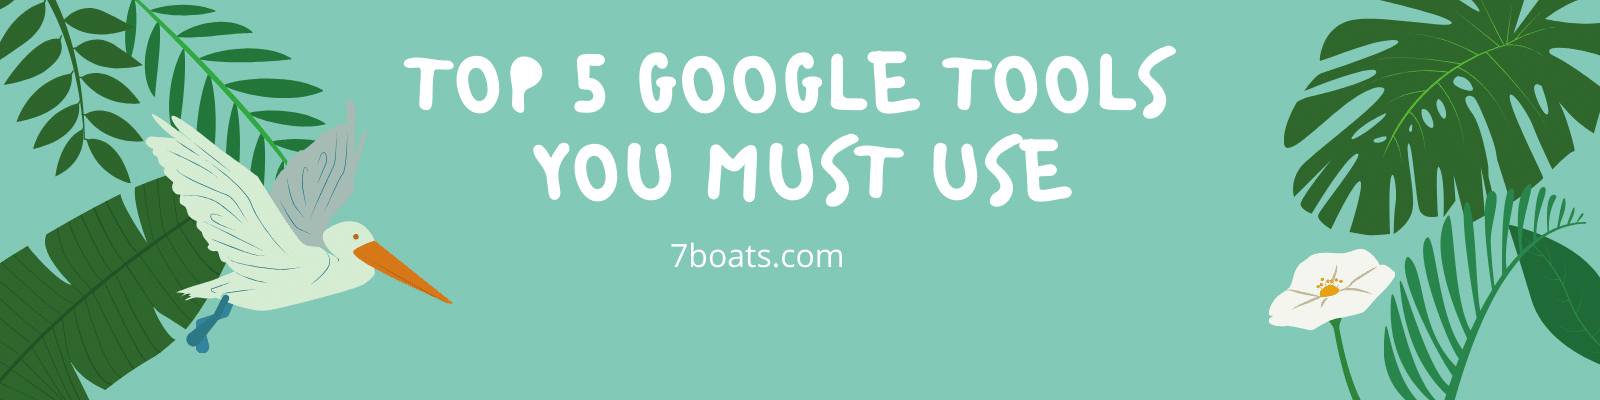 Top 5 Google Tools 7boats